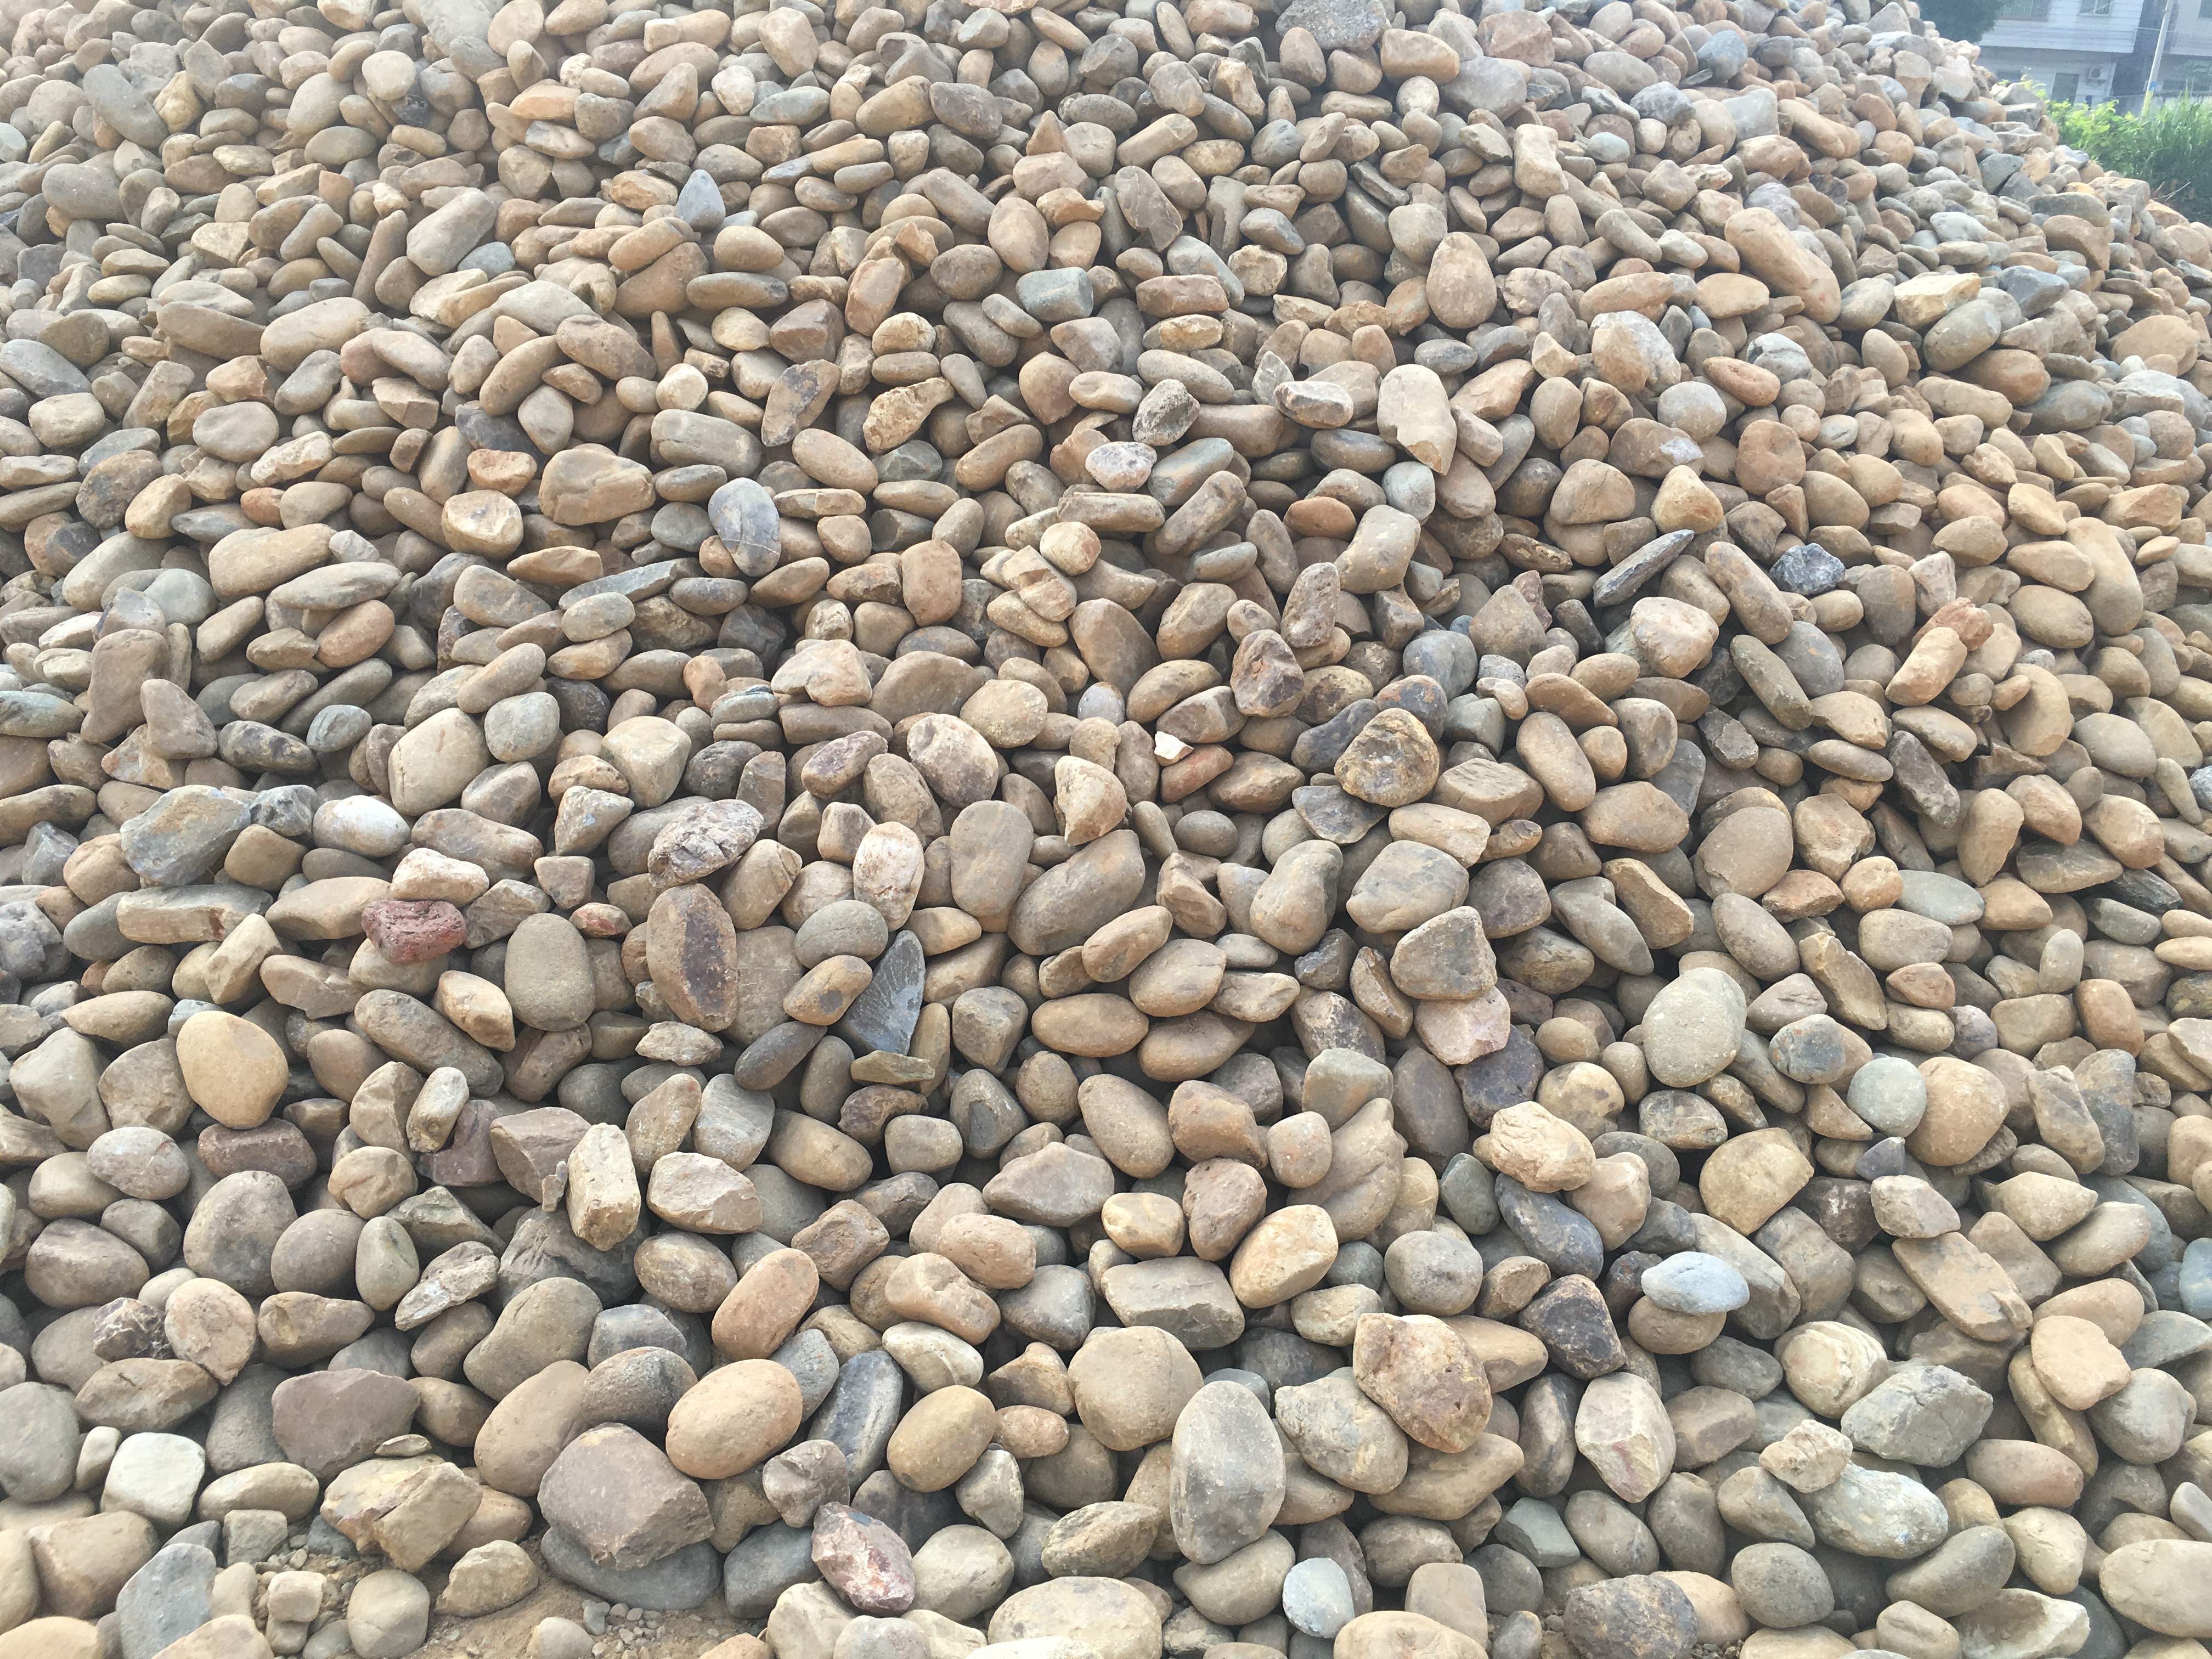 供应鹅卵石 机制鹅卵石 天然鹅卵石 大量批发鹅卵石厂家图片